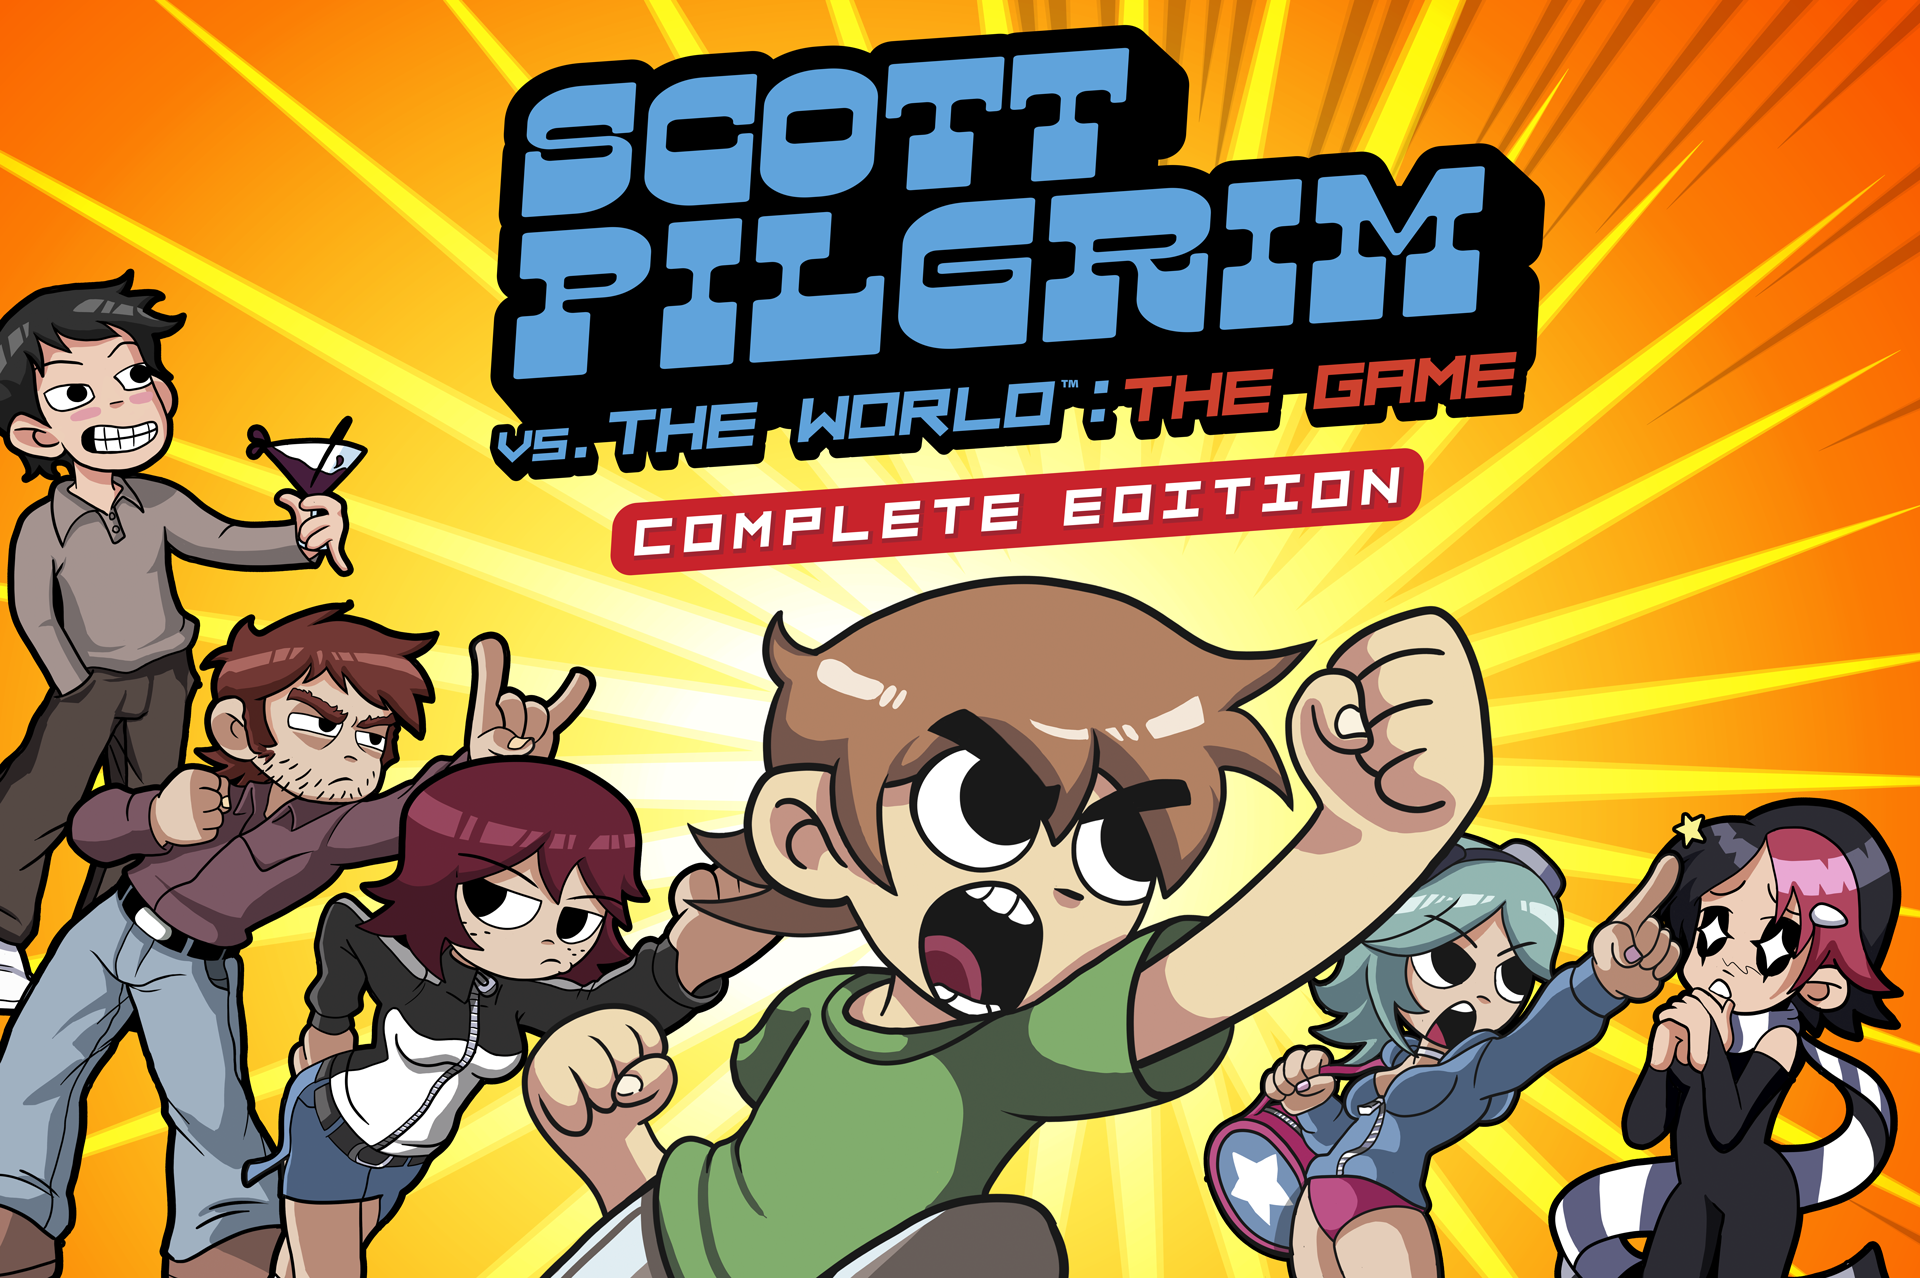 124: Scott Pilgrim vs. The World: The Game